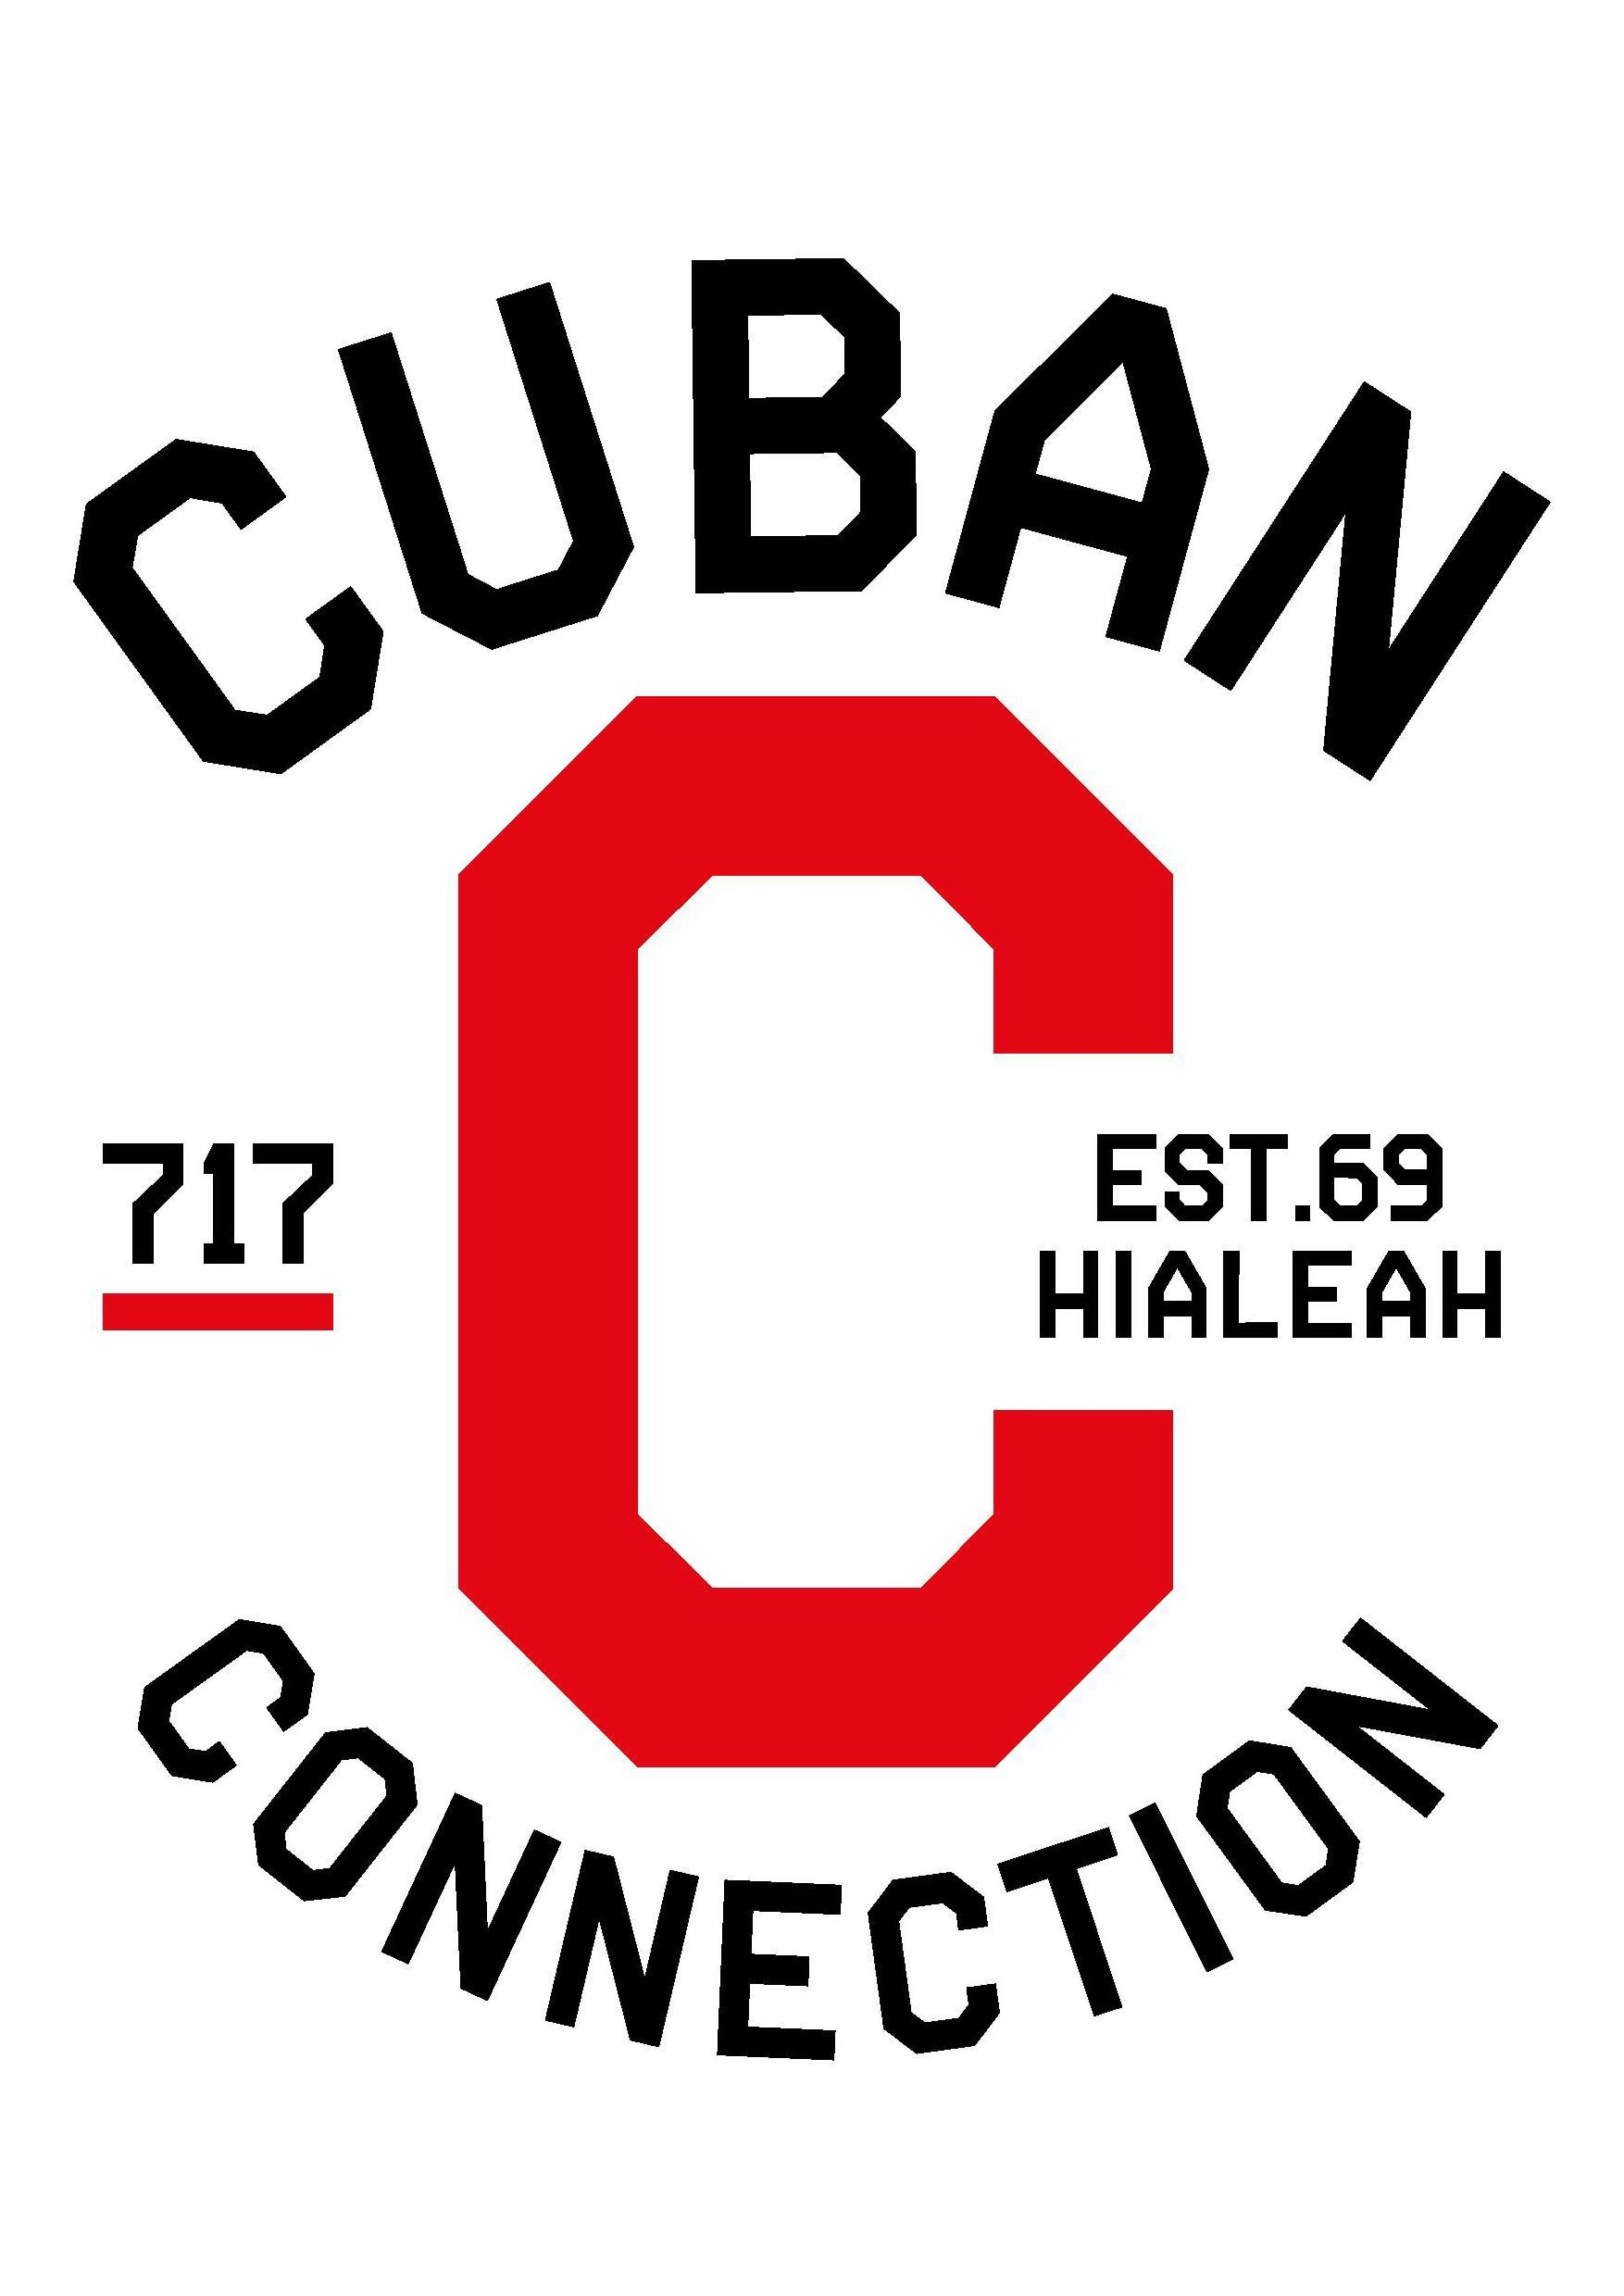  C CUBAN CONNECTION 717 EST. 69 HIALEAH